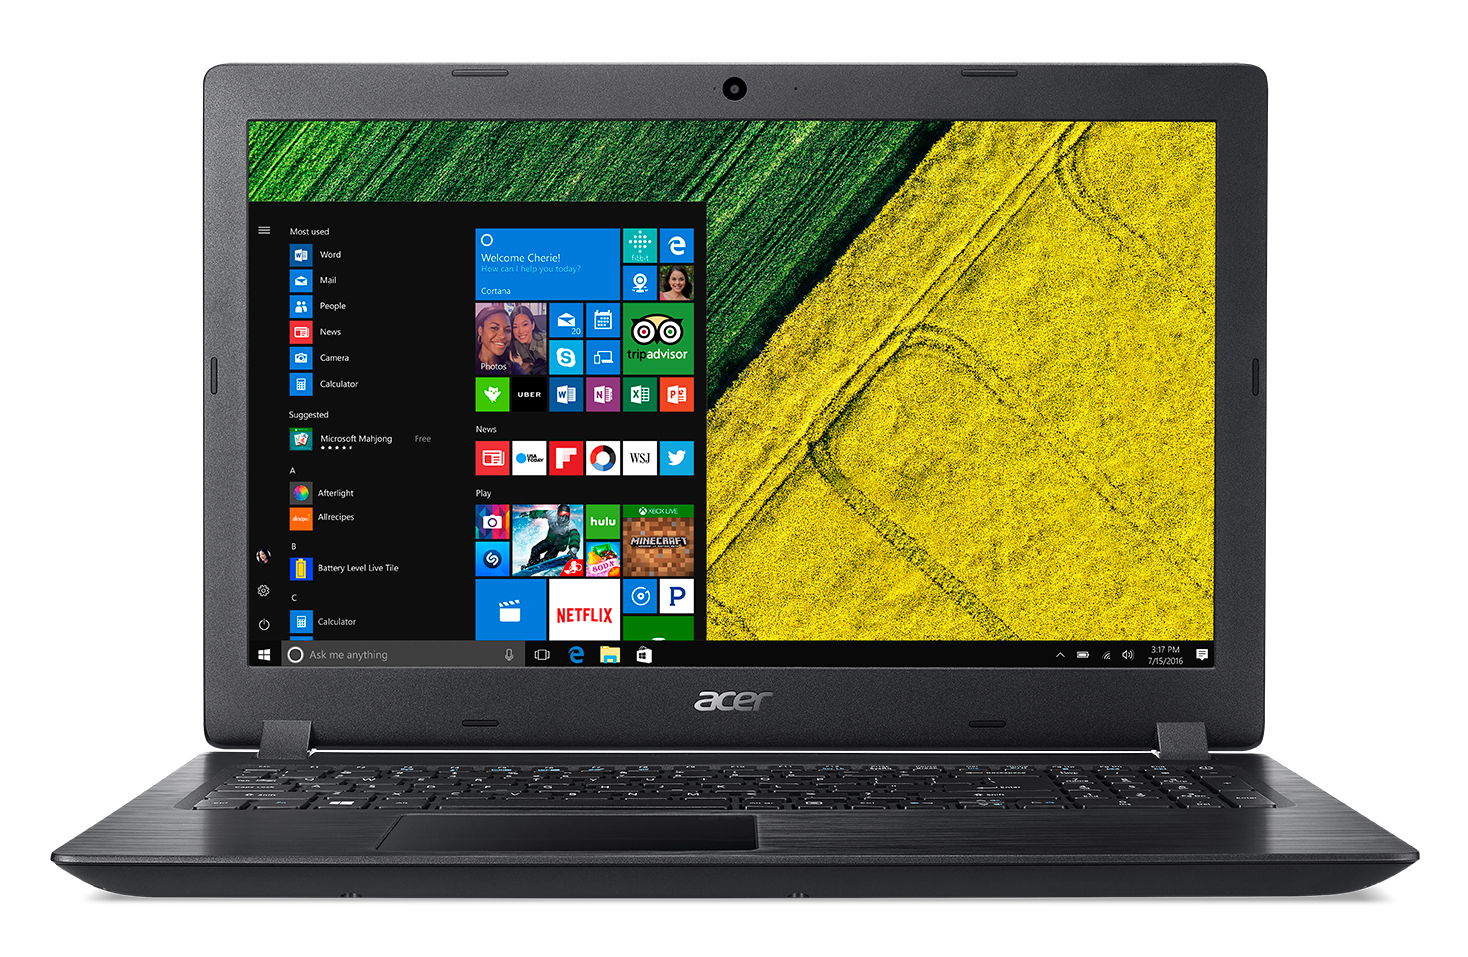 Laptop Second Hand Acer Aspire 3 A315-21-648x, Amd A6-9220 2.50-2.90ghz, 8gb Ddr4, 256gb Ssd, 15.6 Inch Full Hd, Tastatura Numerica, Webcam